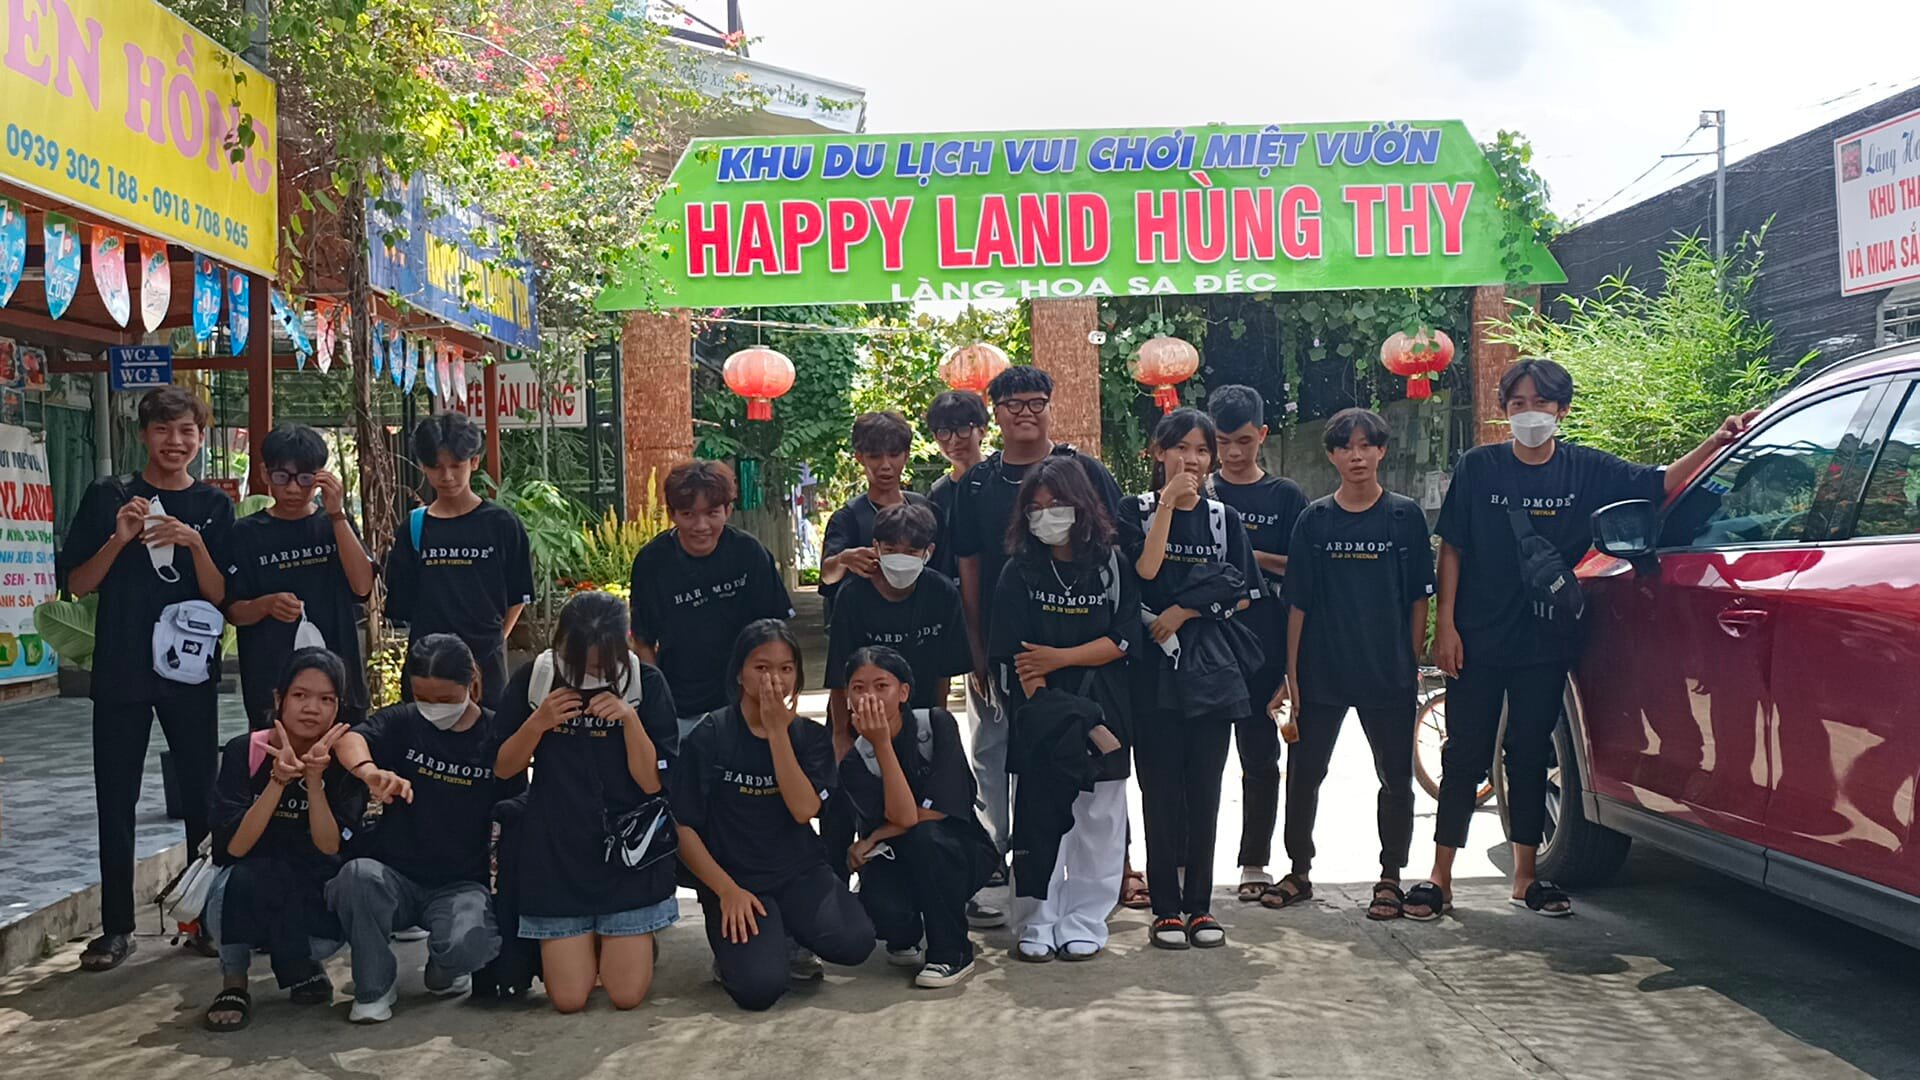 Happy Land Hung Thy Tourist Area – Sa Dec’s Secret